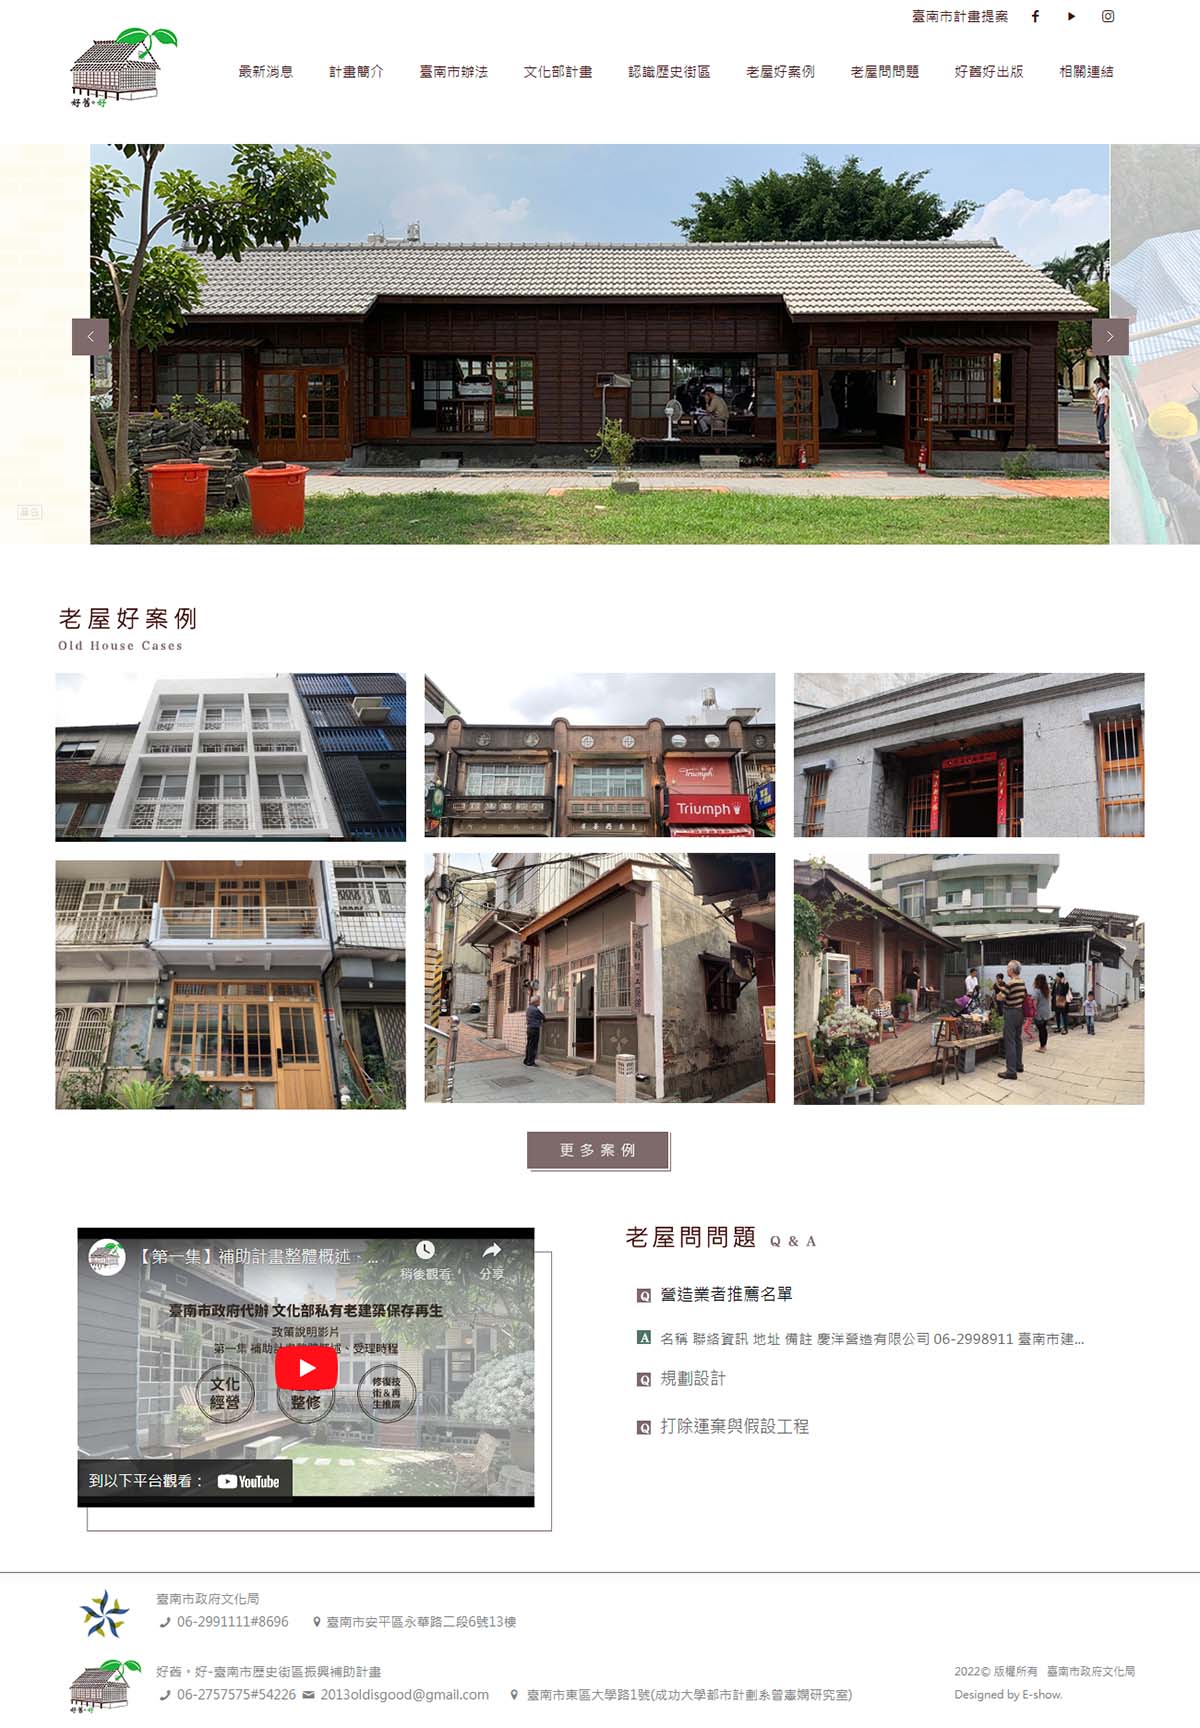 好舊。好-臺南市歷史街區振興補助計畫 政府響應式網站設計
